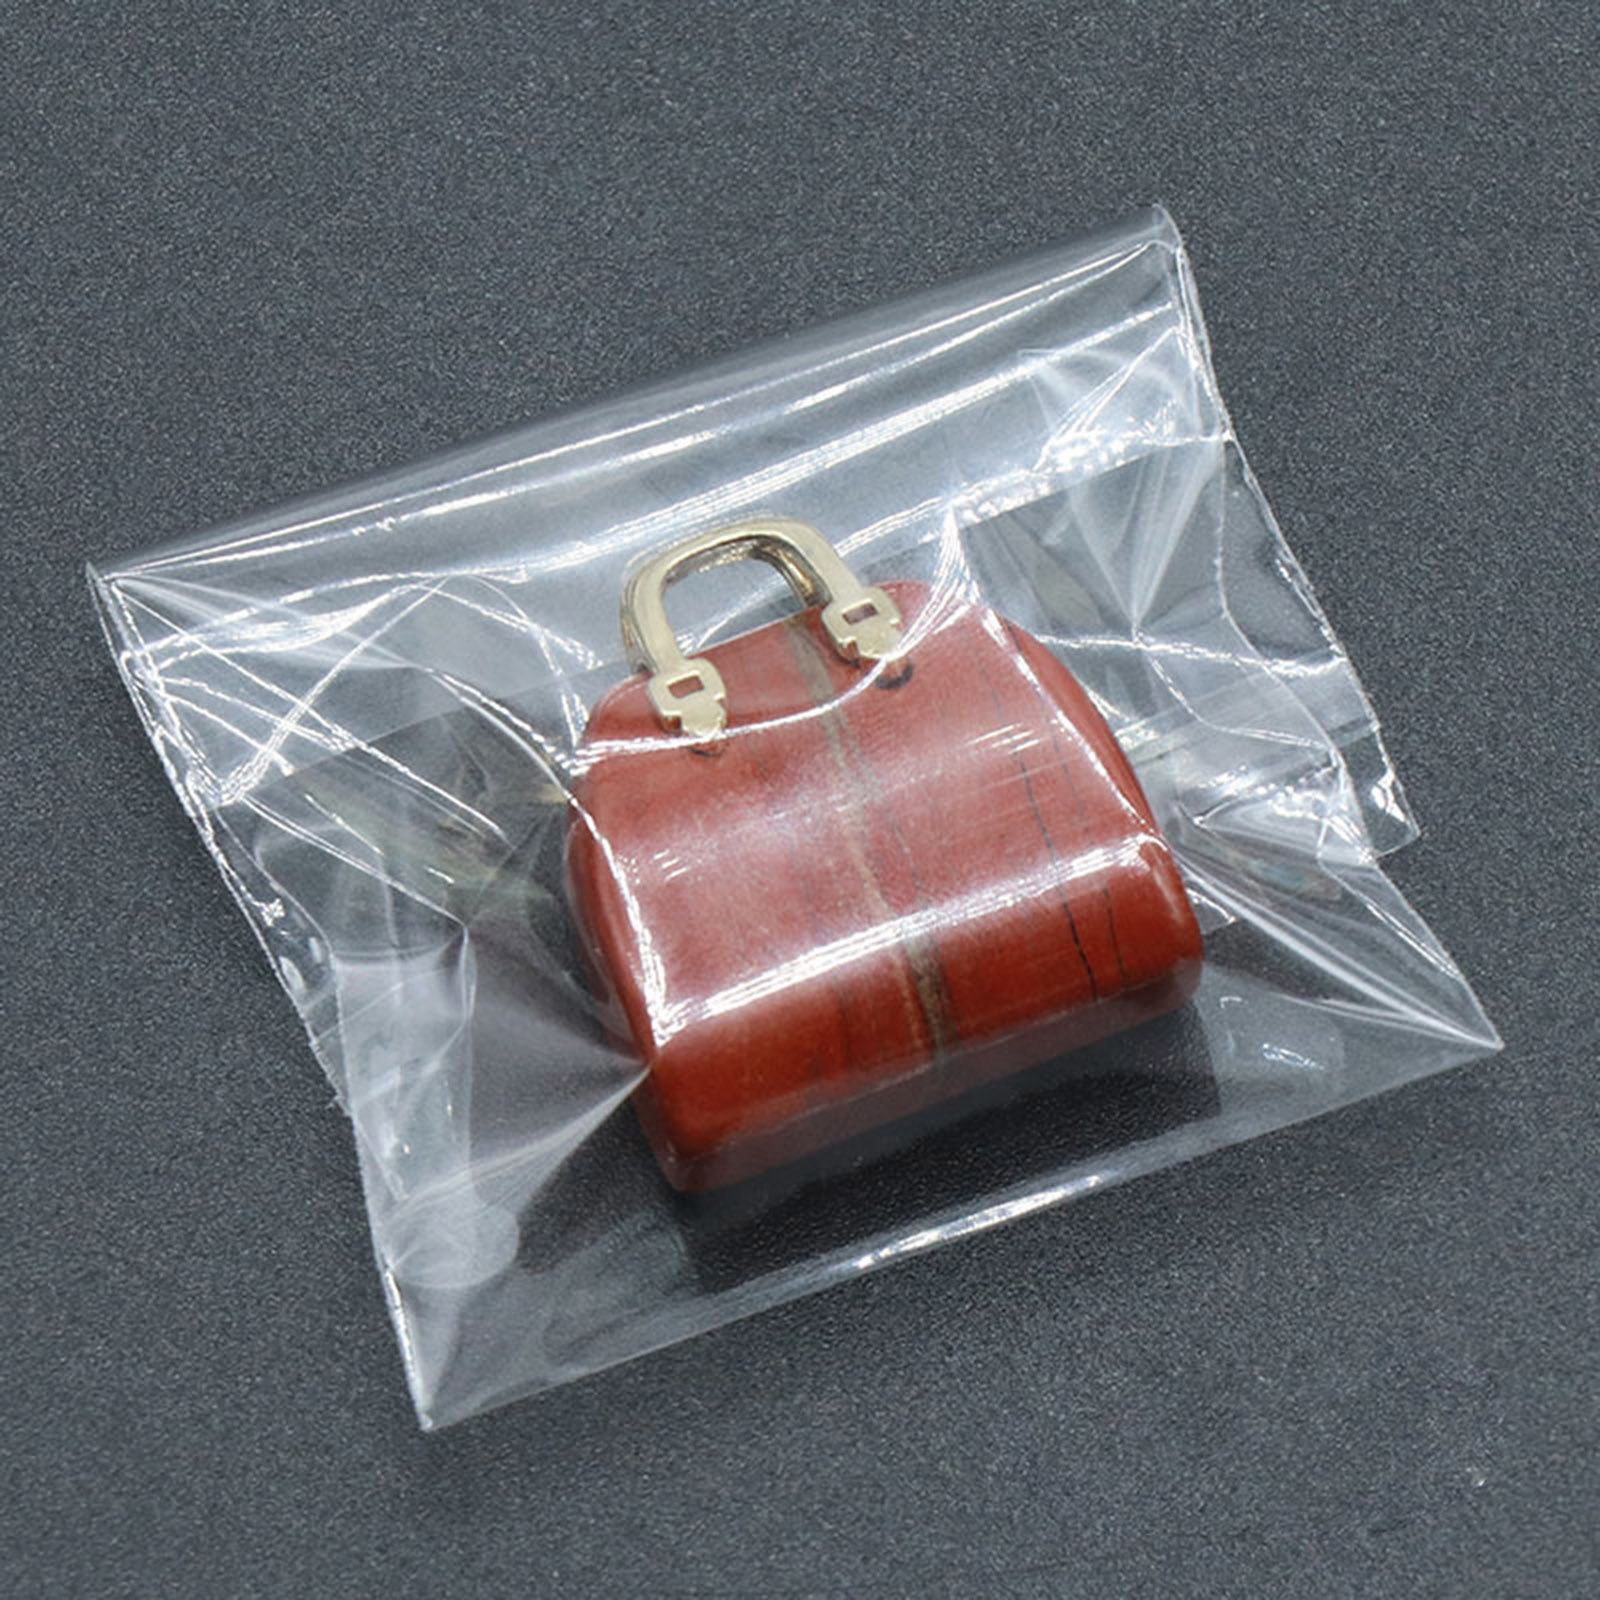 Bild von Halbedelstein Ins Stil Charms Handtasche Vergoldet Bunt 27mm x 25mm, 1 Stück